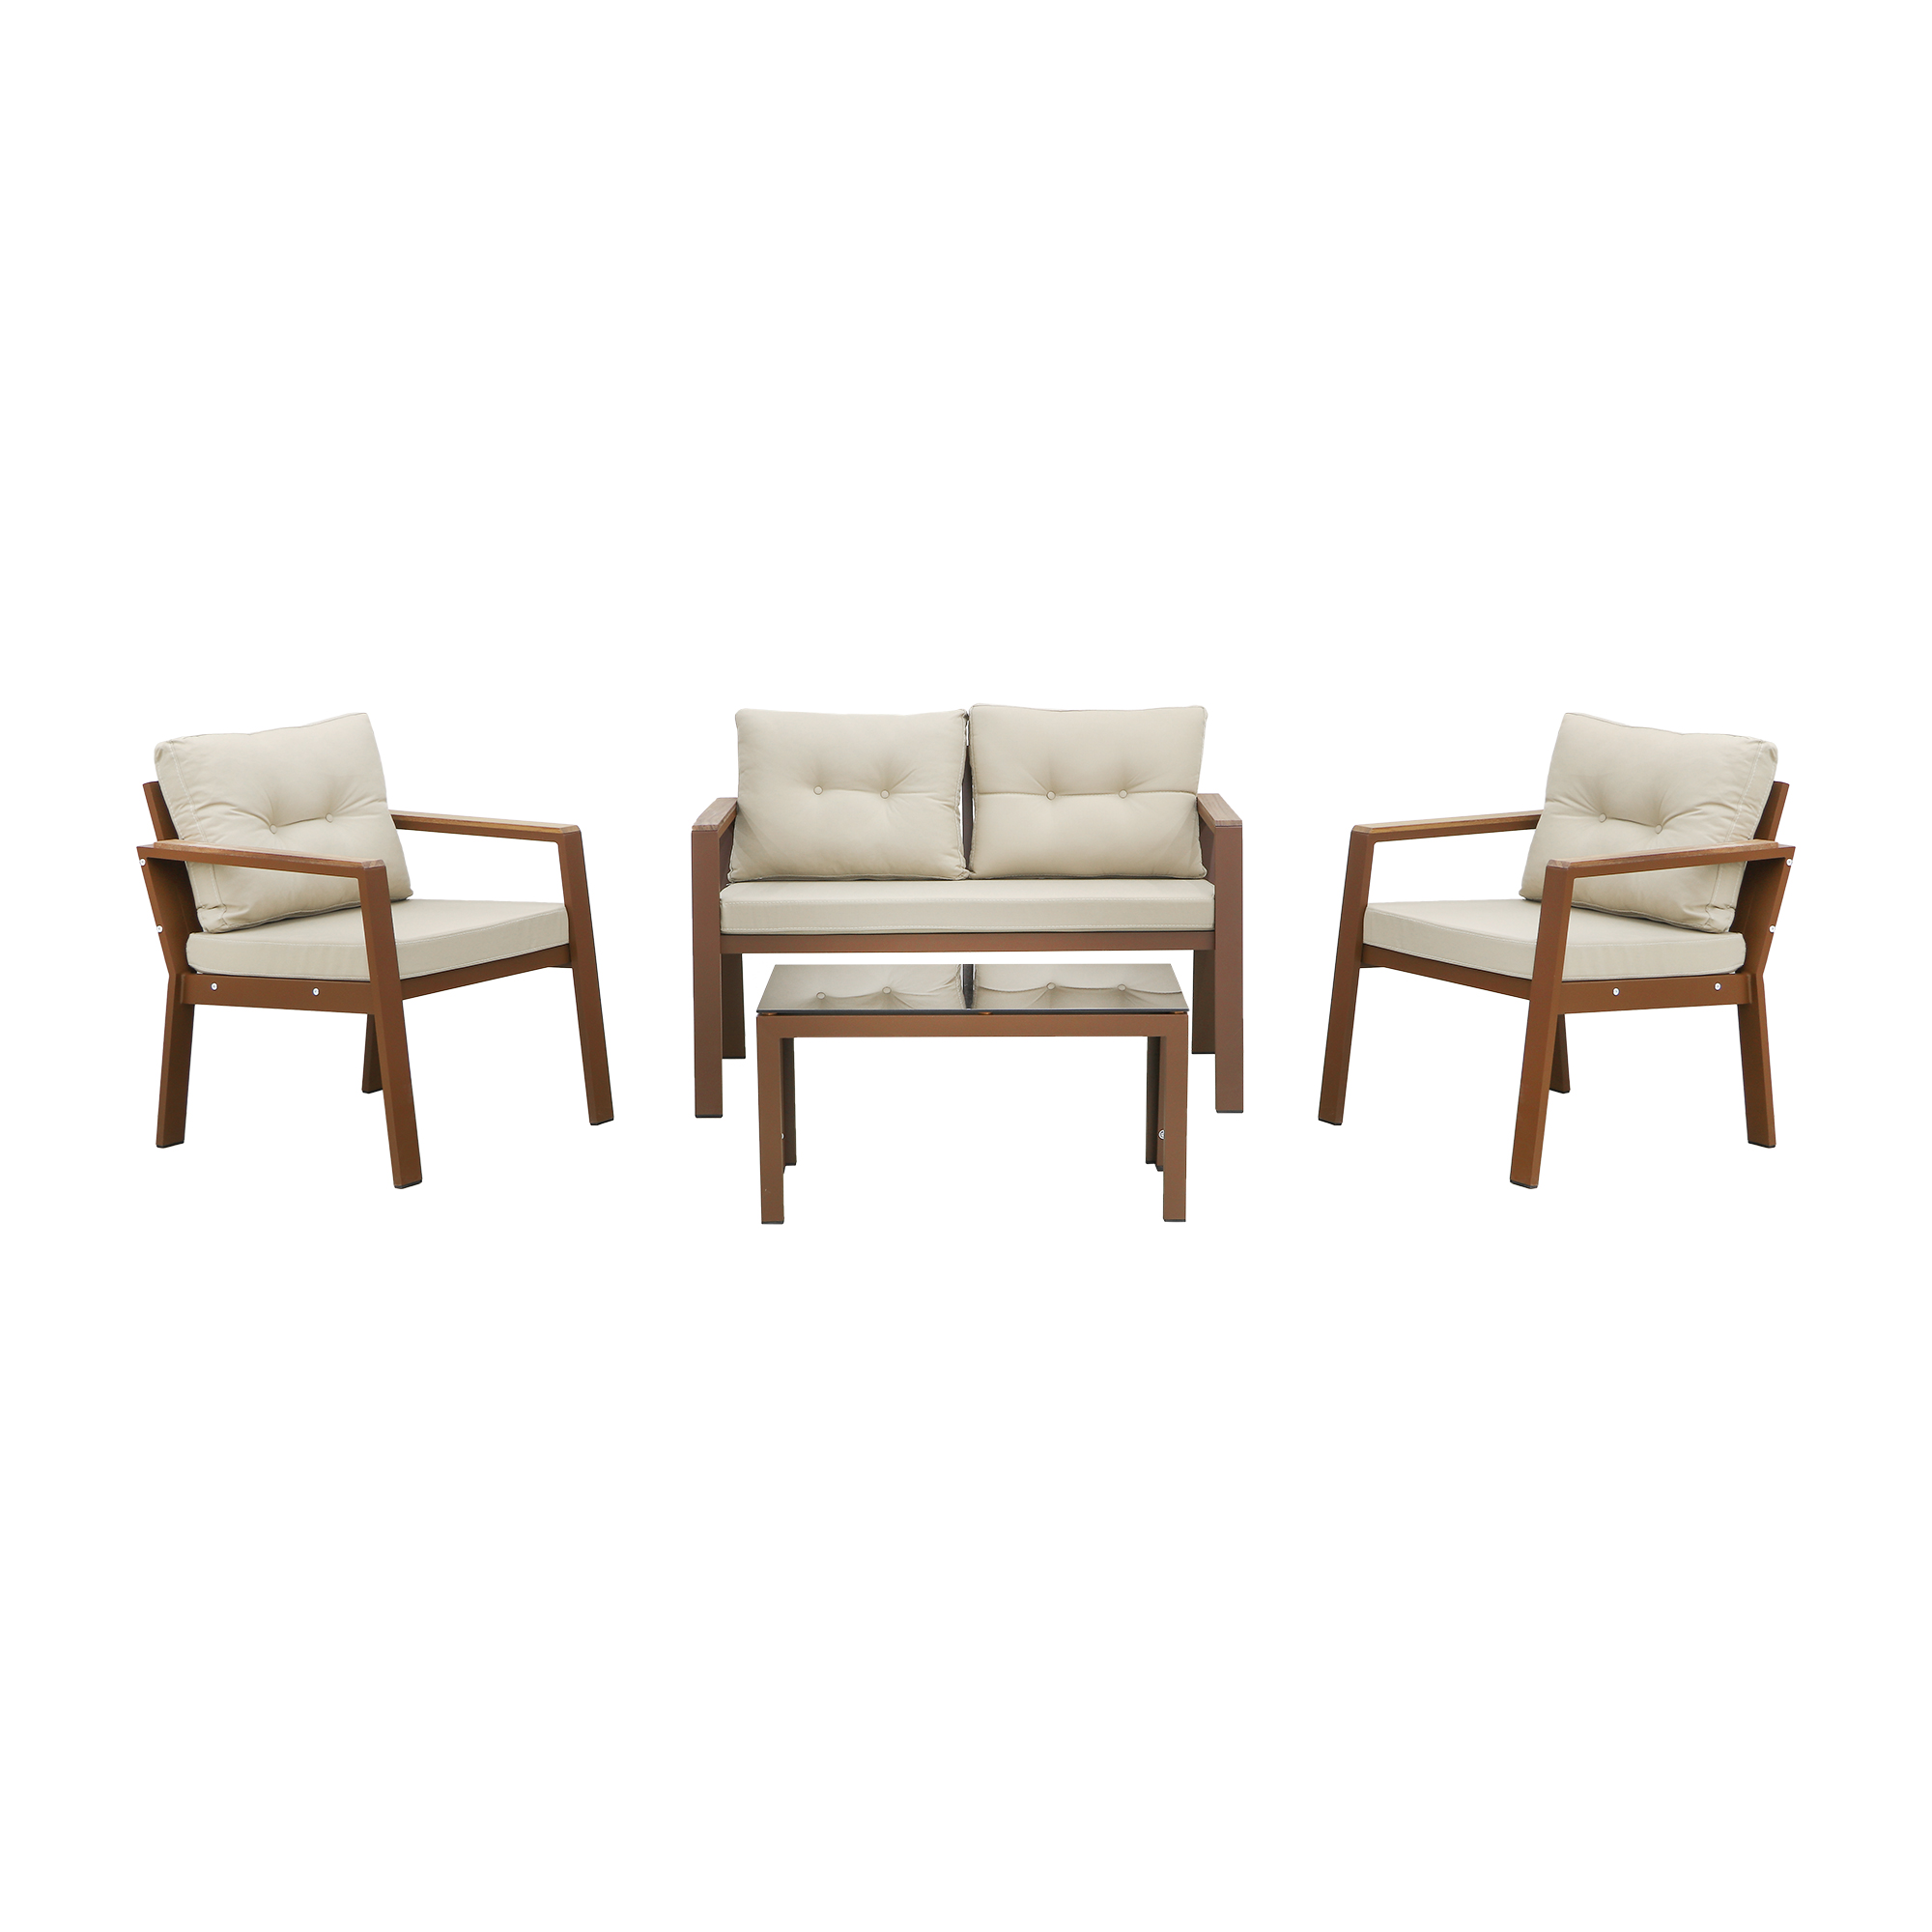 Комплект мебели Erinoz Daphne, цвет коричневый, размер 60x124x75 см - фото 1